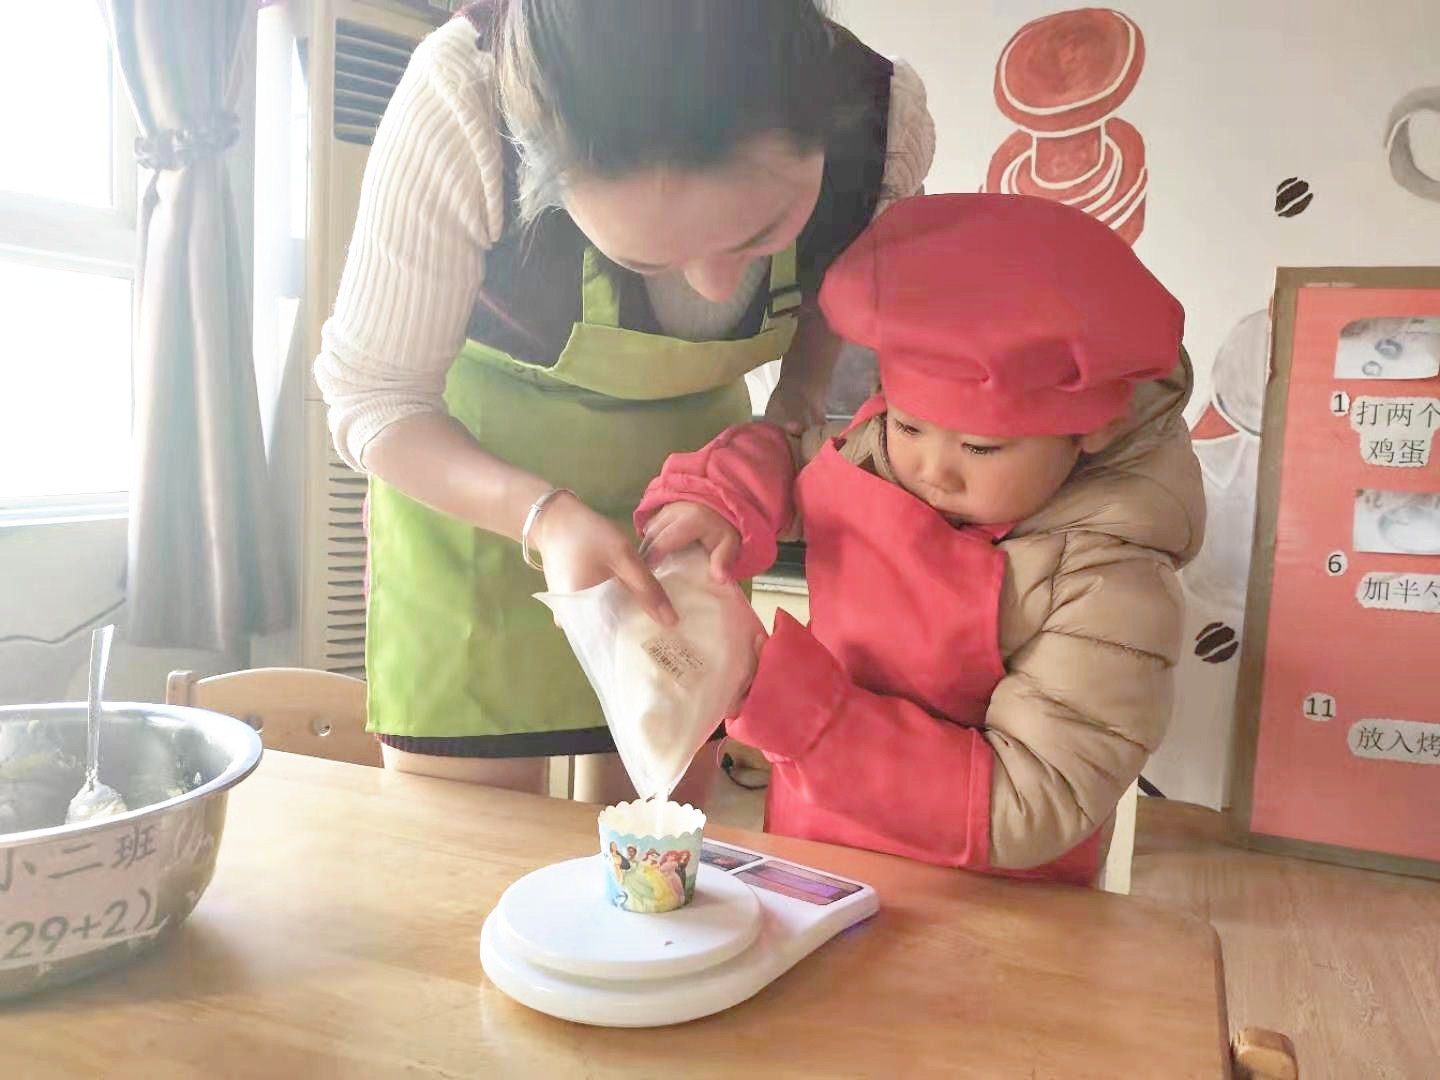 巧玩泥工 “智”做饼干-精彩活动 - 常州市天宁区红梅幼儿园